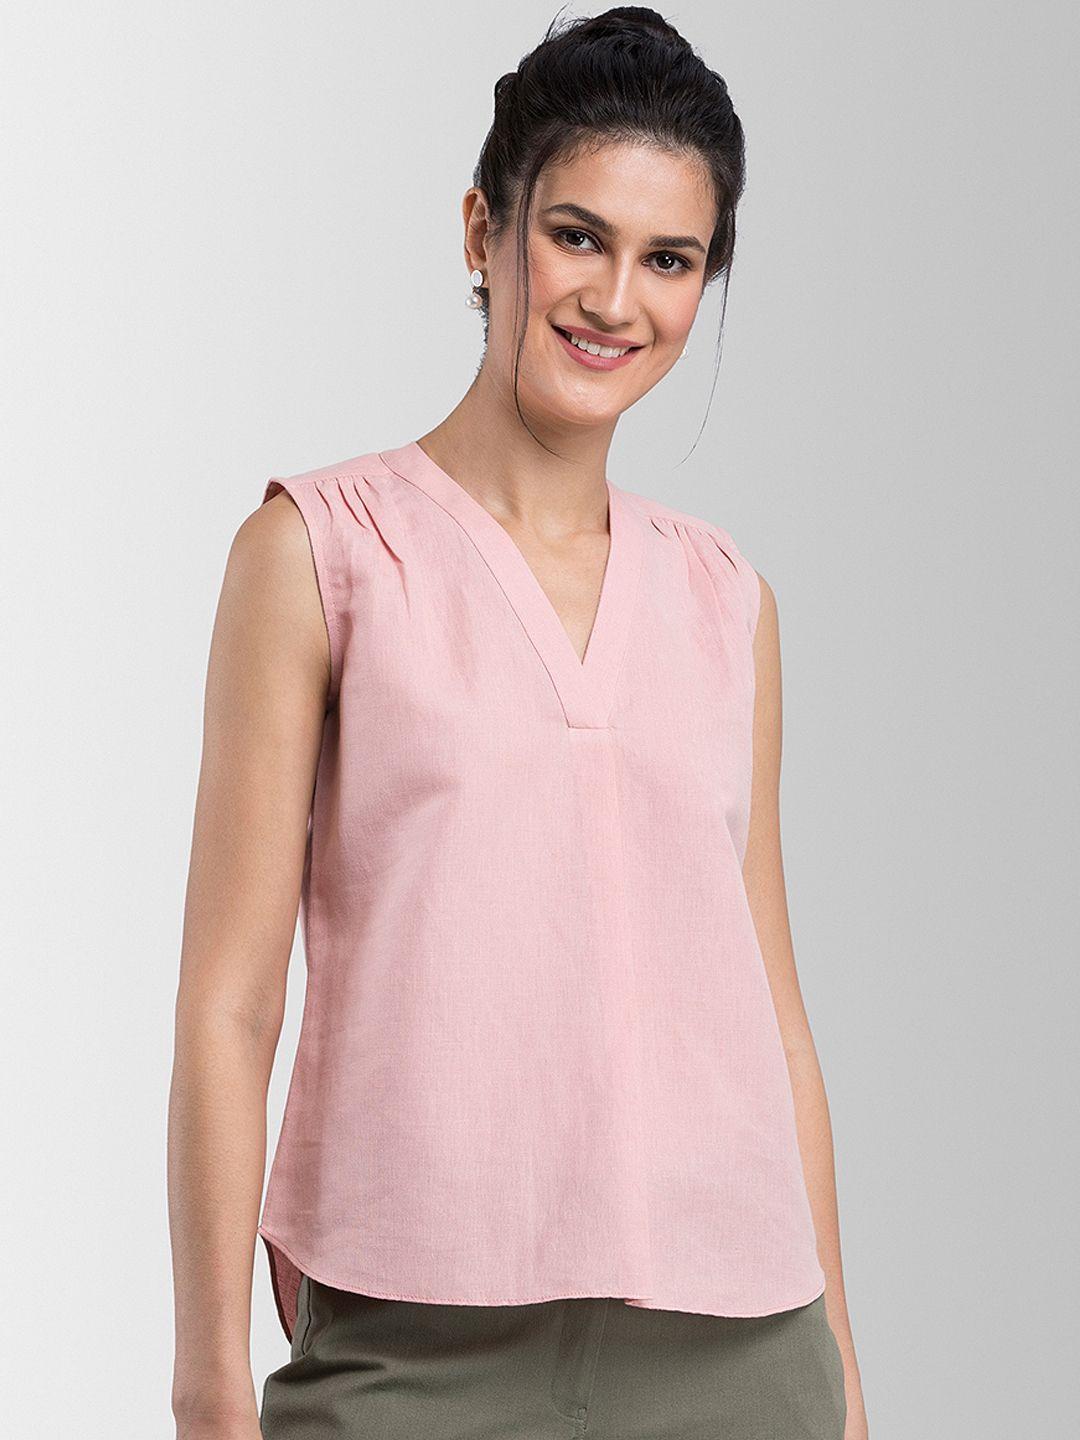 fablestreet-women-pink-solid-linen-top